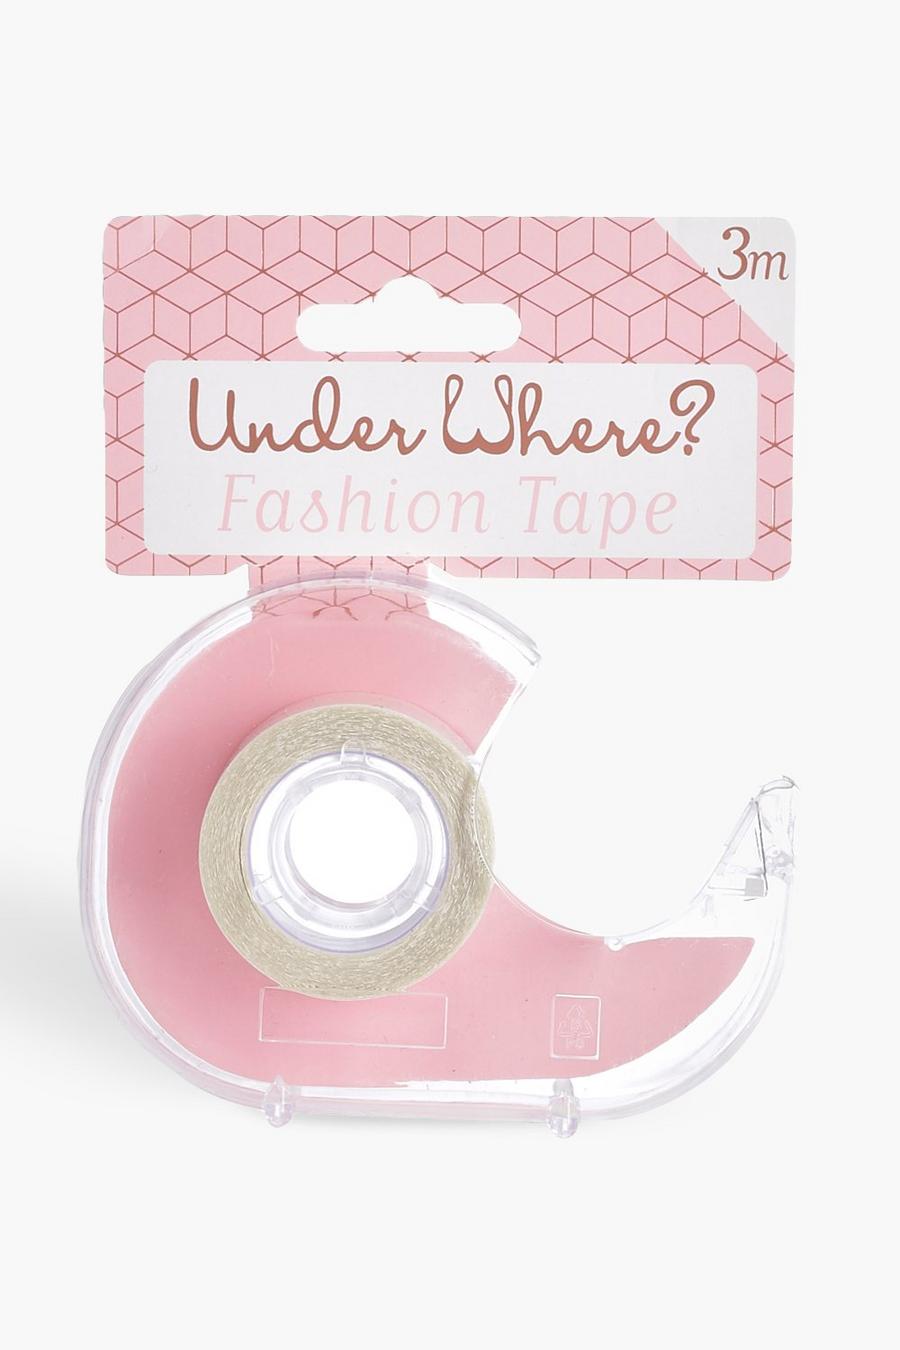 Doorzichtig clear Underwhere? Fashion Tape Holder